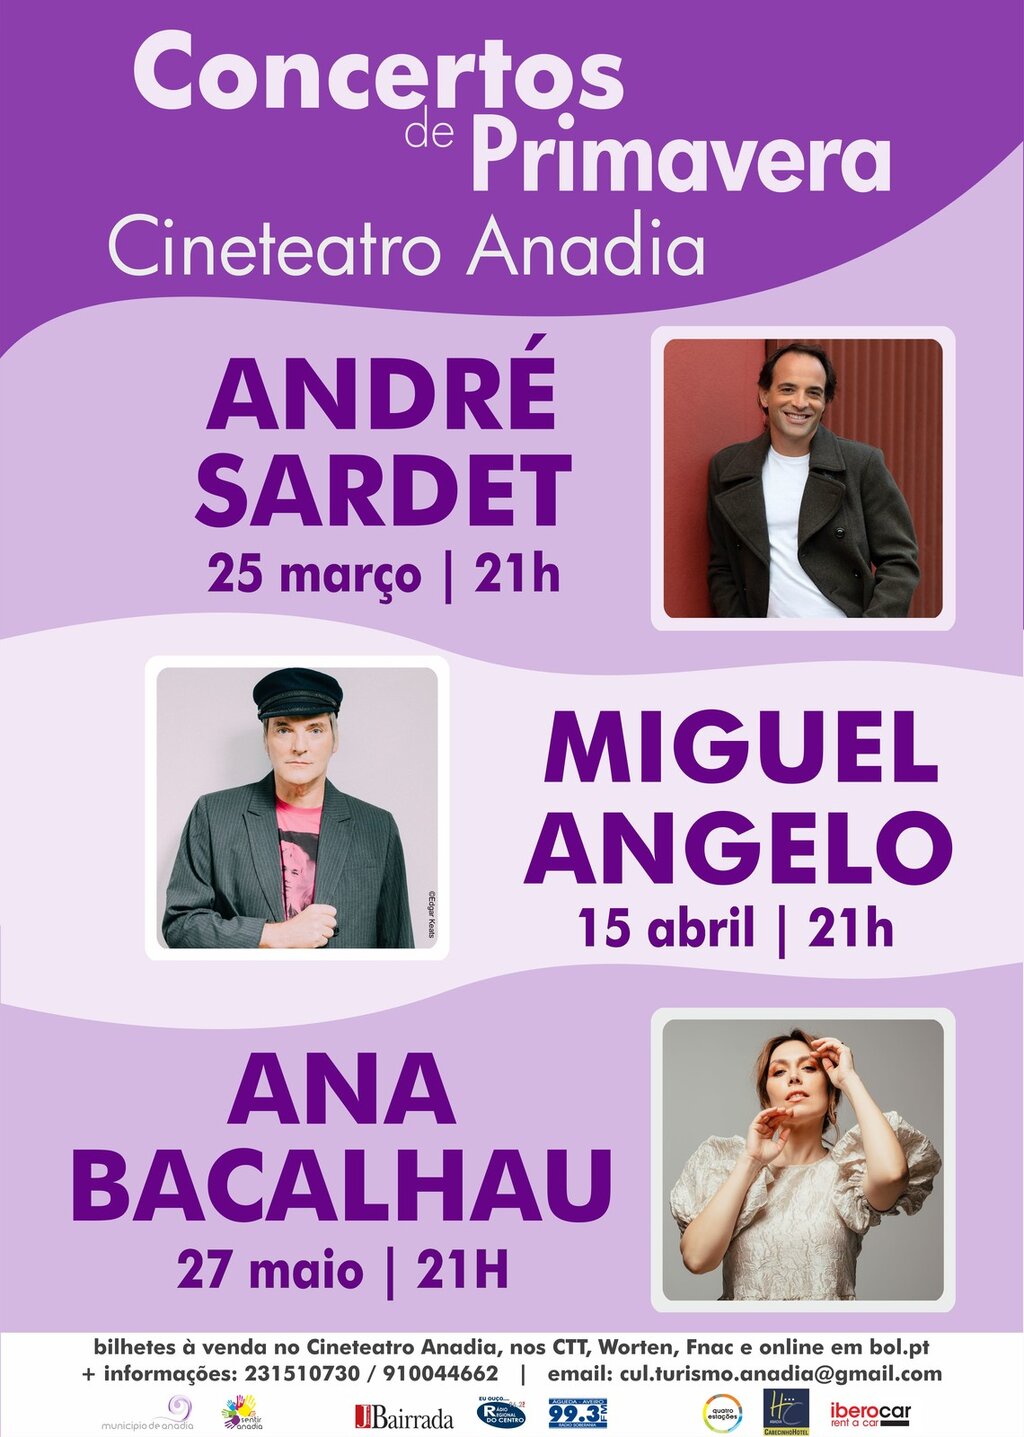 Concertos de Primavera no Cineteatro Anadia